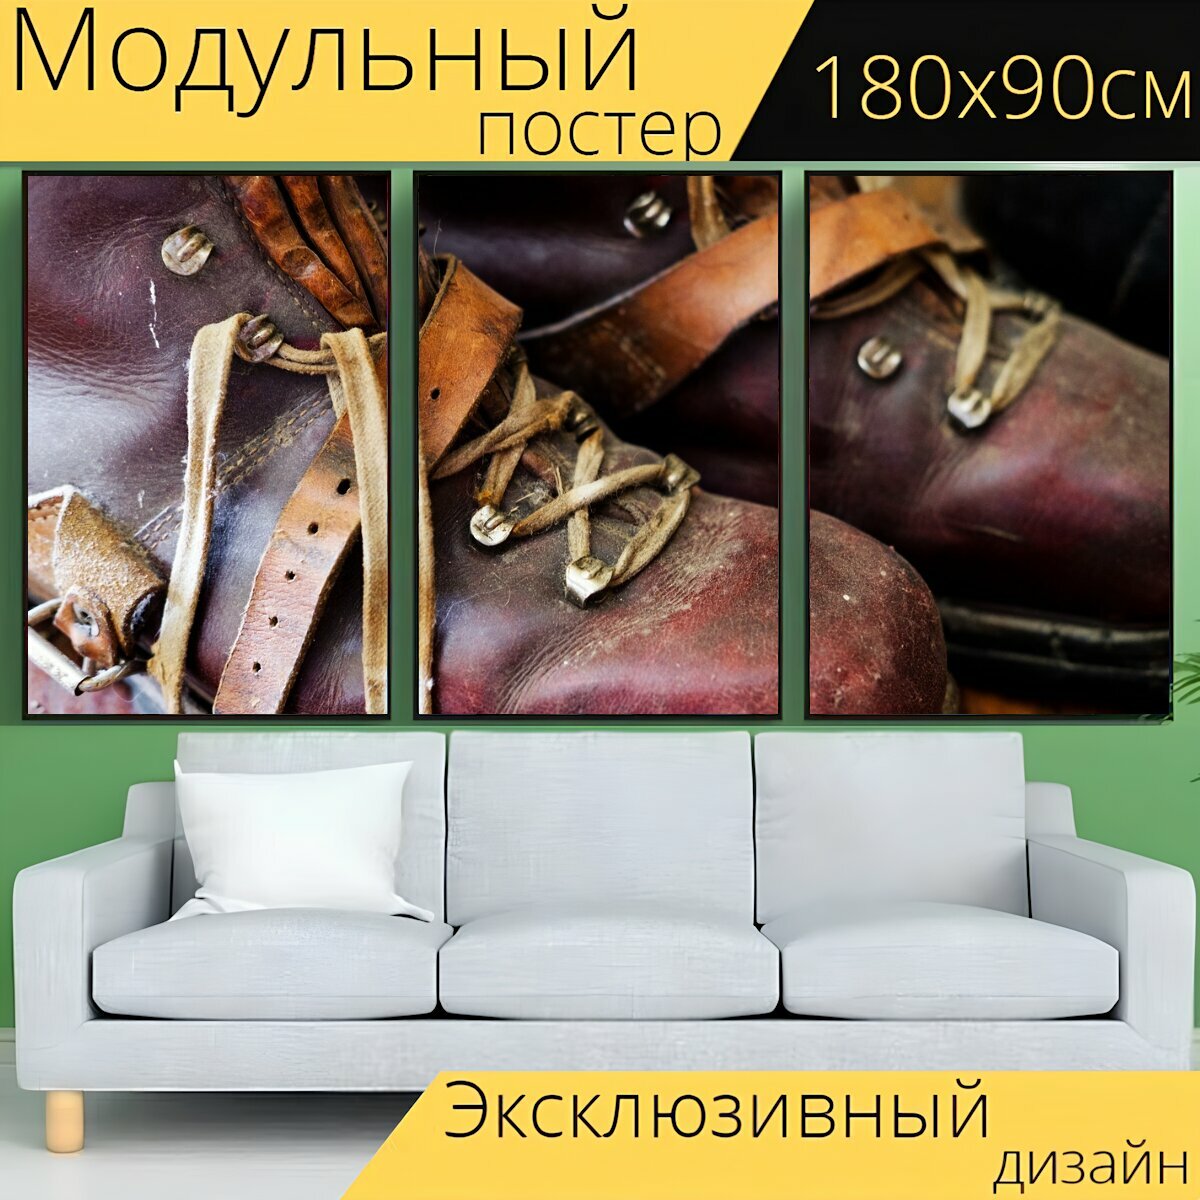 Модульный постер "Обувь, ботинки для прогулки, кожаные ботинки" 180 x 90 см. для интерьера